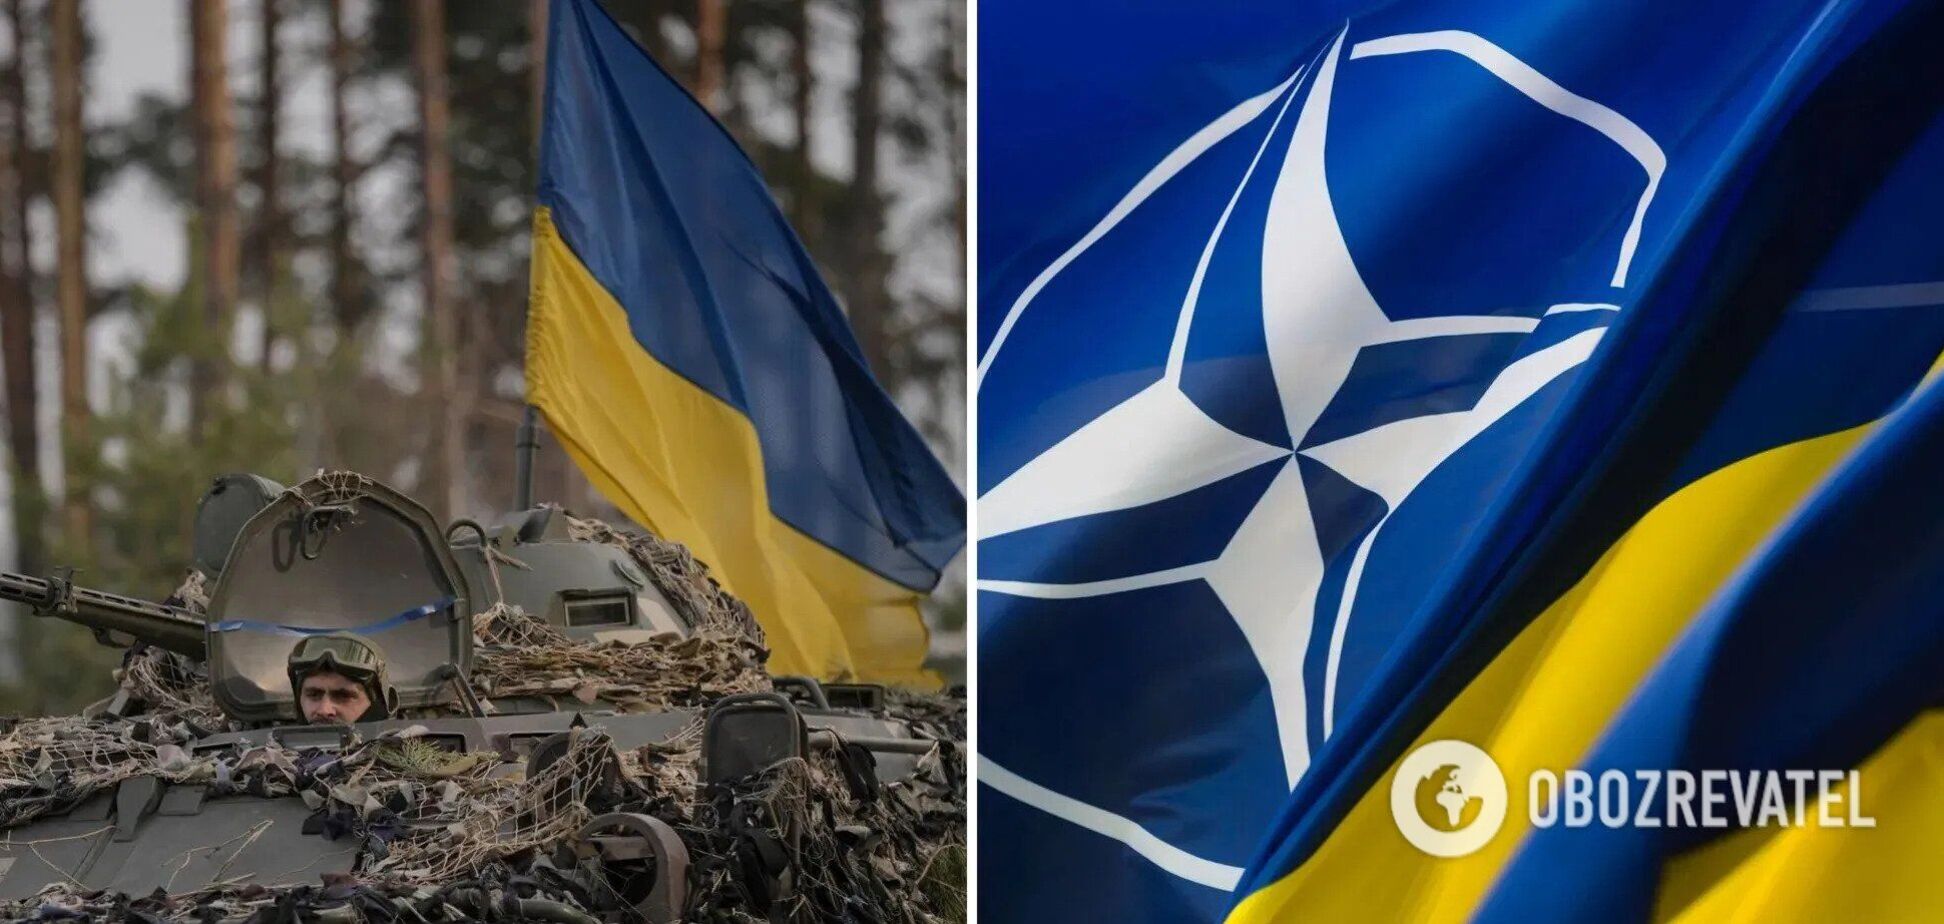  'Позиція чітка і не змінилася': у НАТО прокоментували заяву про обмін території України на членство